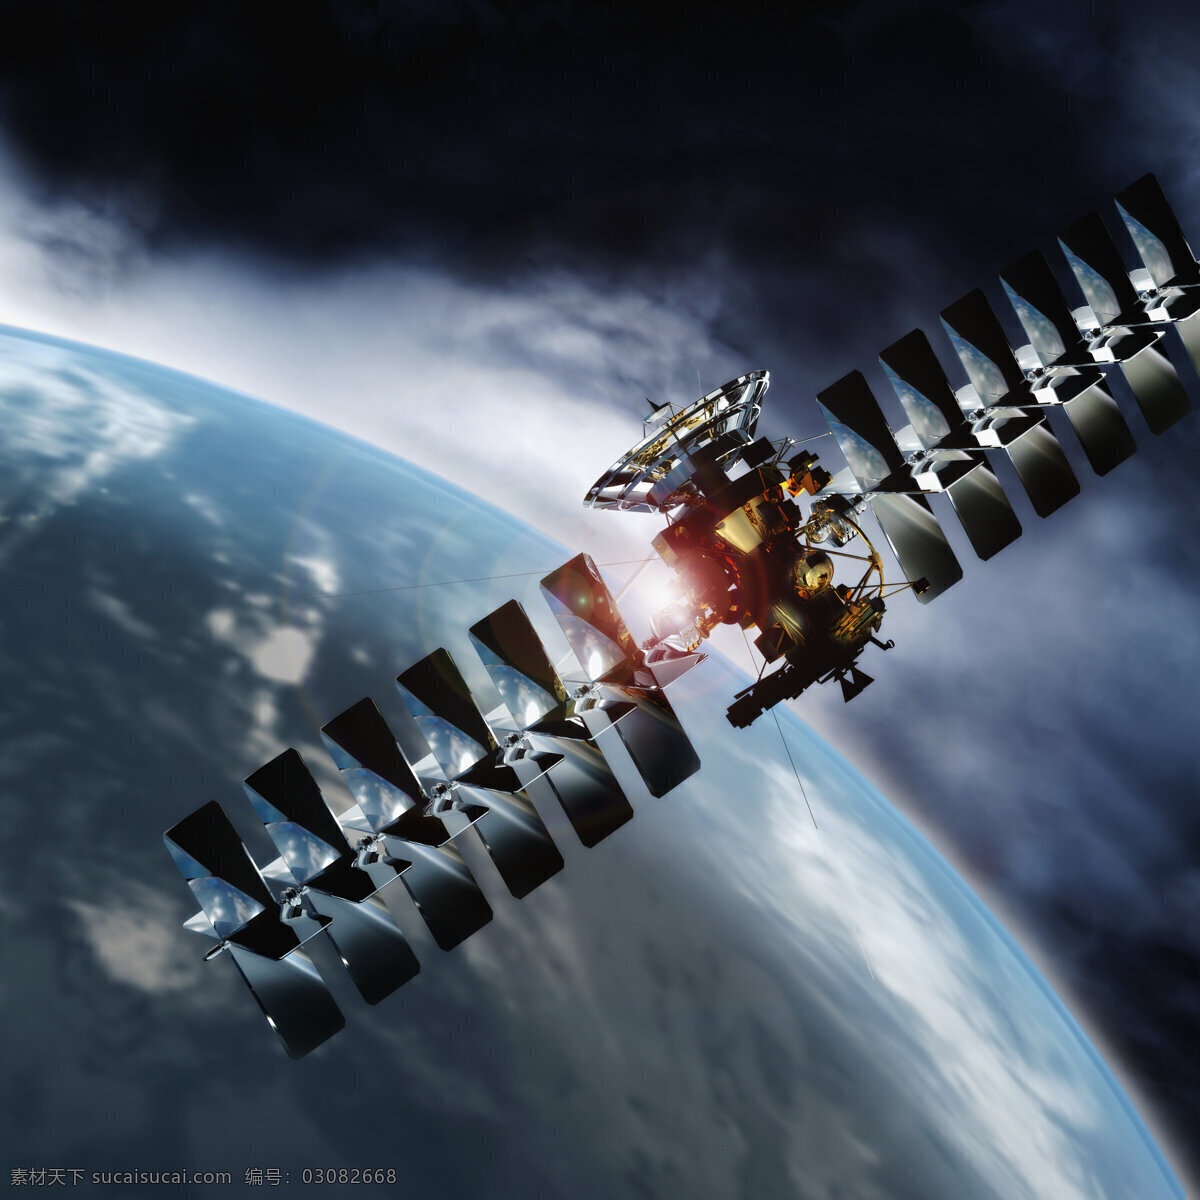 太空 卫星 未来科技 地球表面 飞船 科学 科幻 抽象 创意 高清图片 其他类别 现代科技